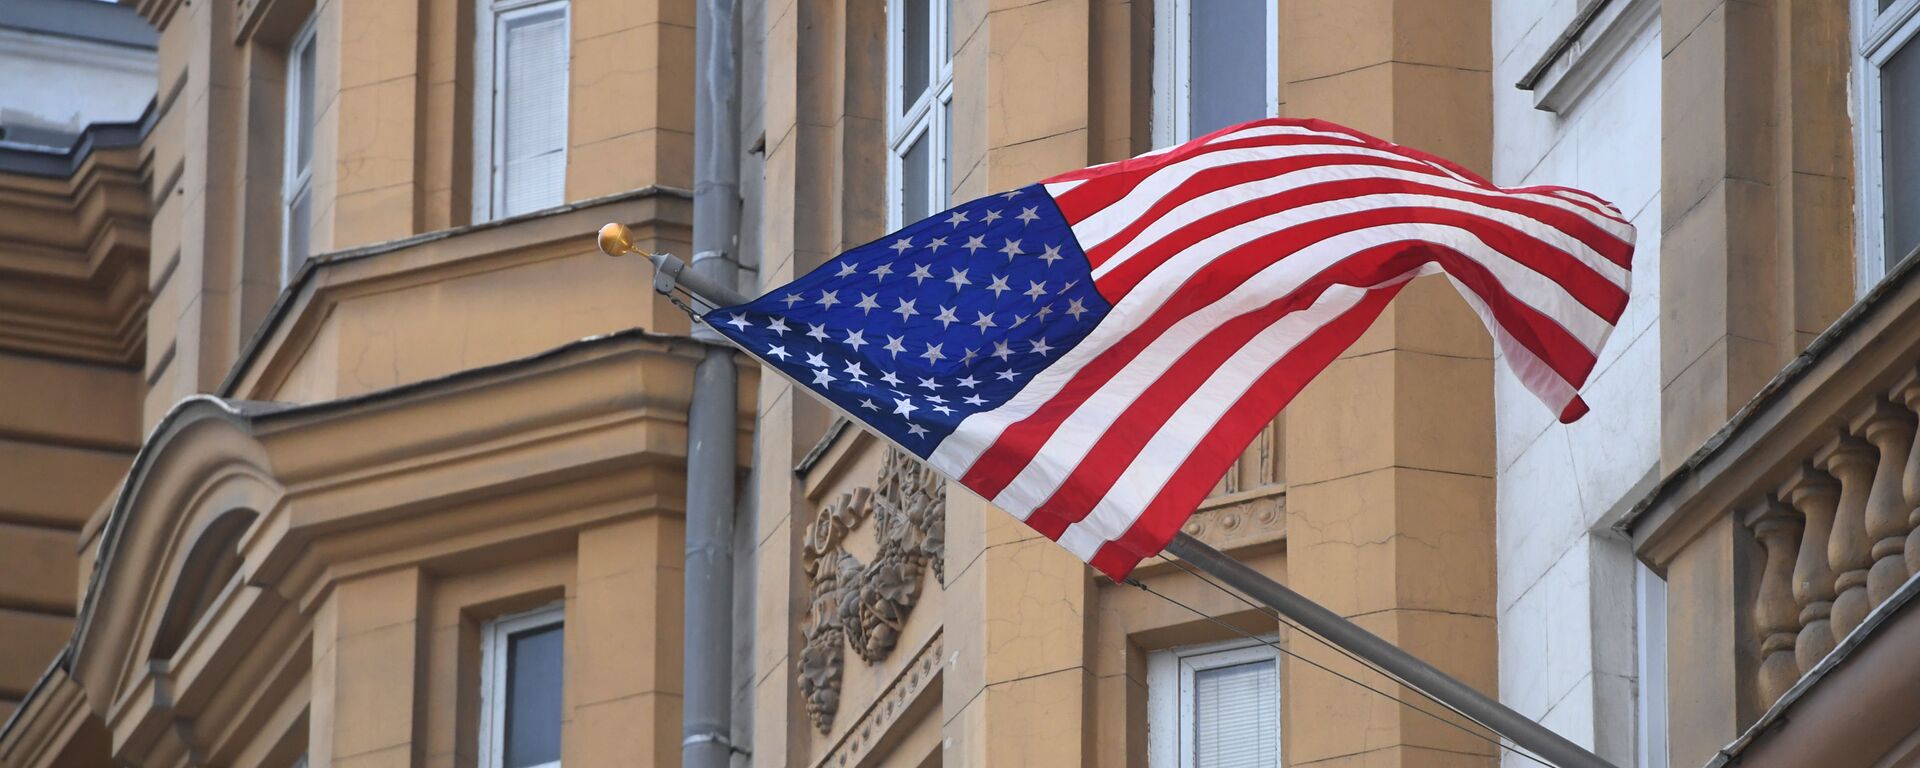 Quốc cờ Mỹ trên tòa nhà Đại sứ quán Mỹ tại Moskva - Sputnik Việt Nam, 1920, 30.04.2021